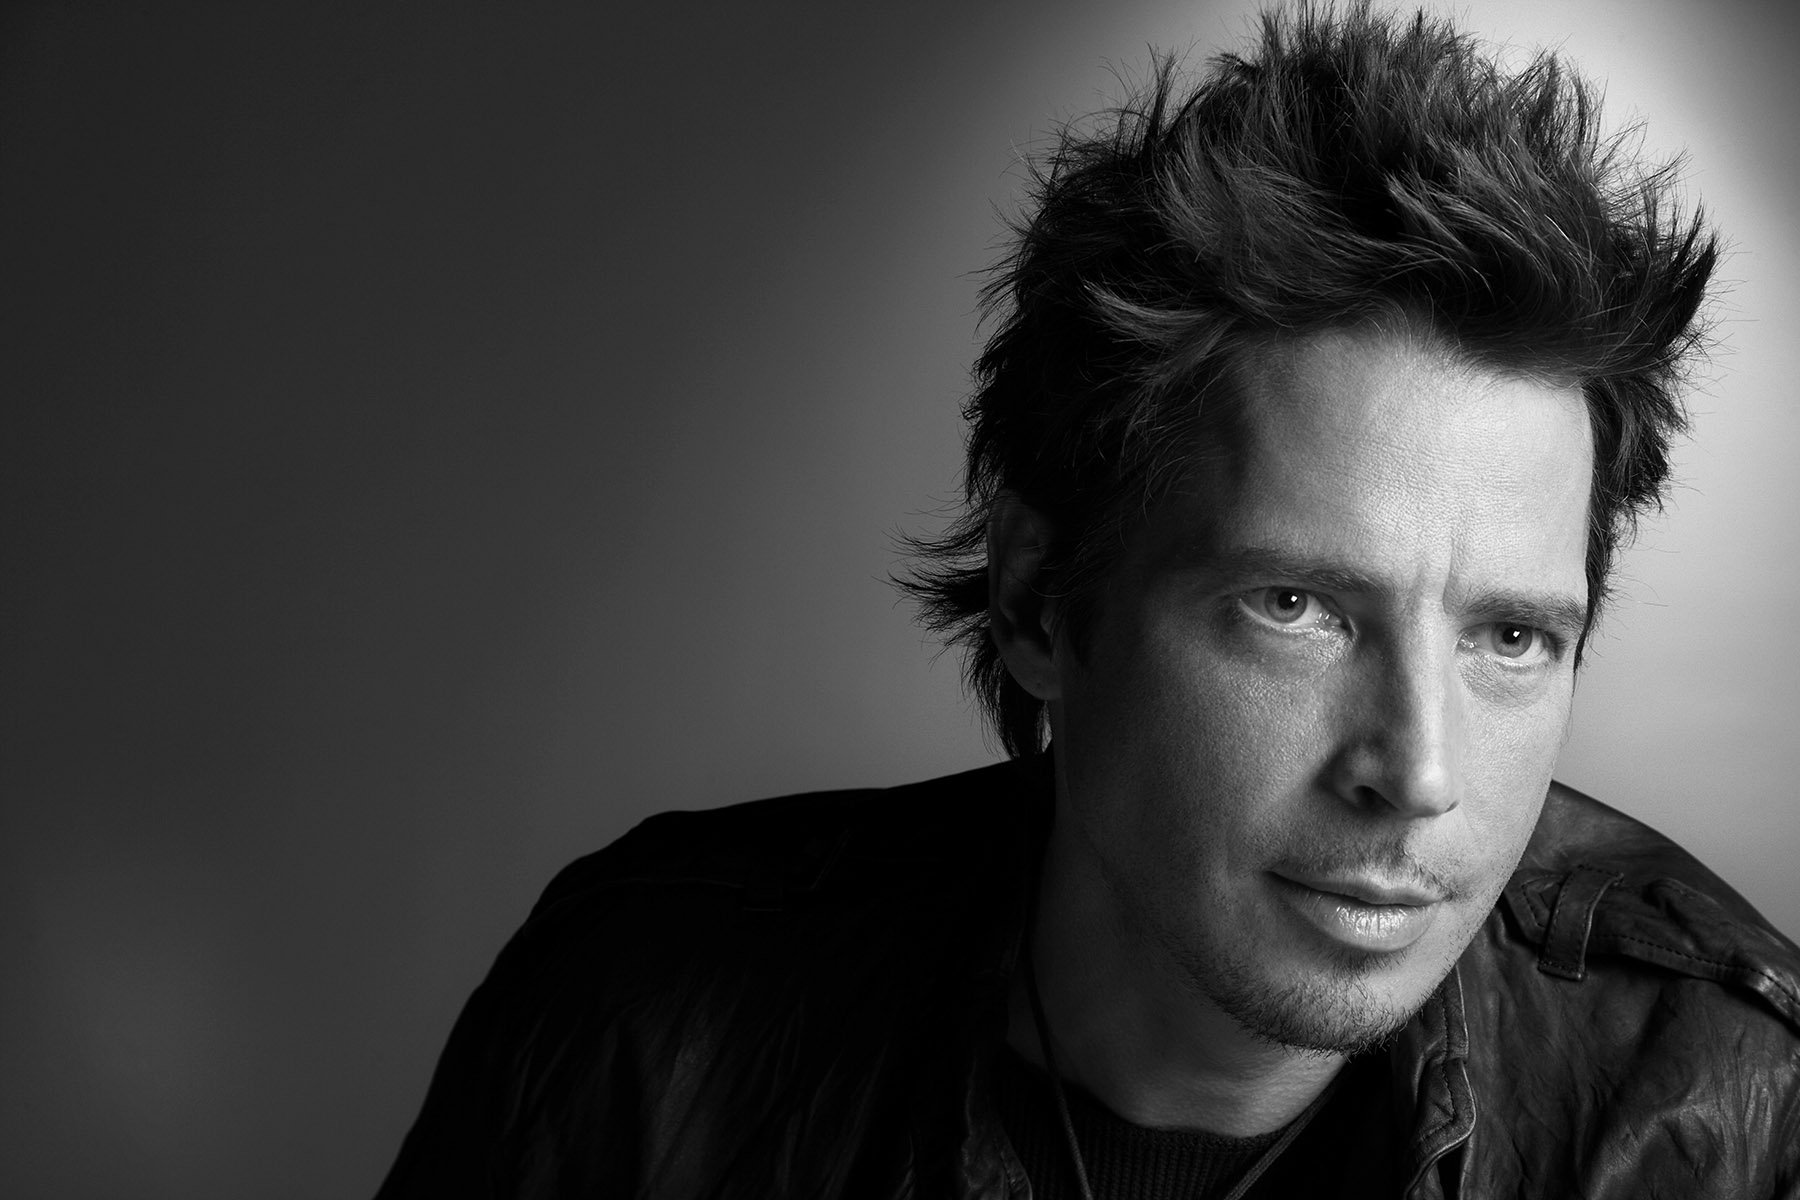 Morreu Chris Cornell, vocalista dos Soundgarden e Audioslave